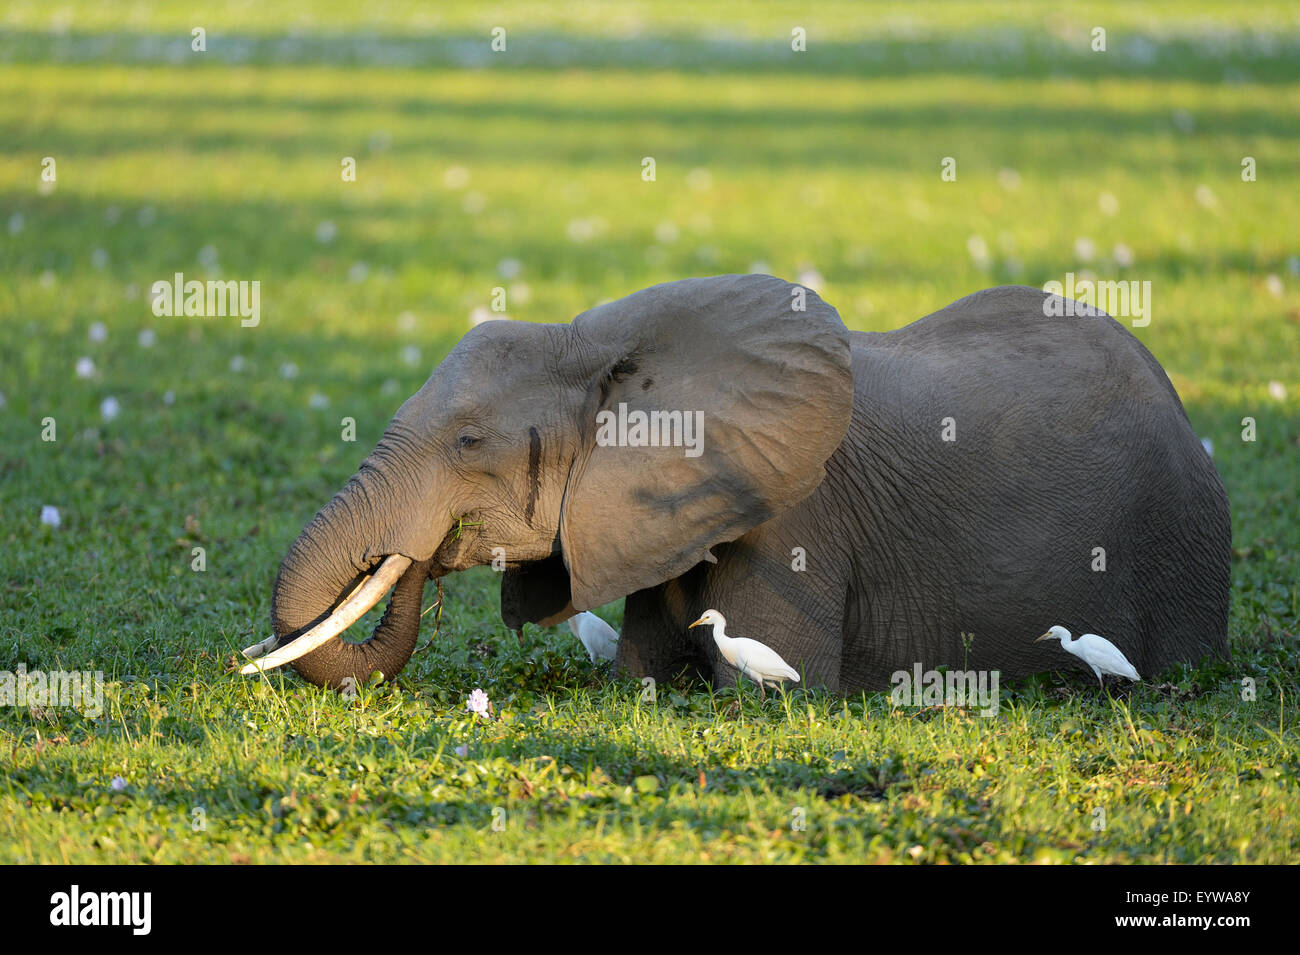 Afrikanischer Elefant (Loxodonta Africana), stehend im verwilderten Wasserloch, ernähren sich von Wasserpflanzen, Kuhreiher daneben Stockfoto